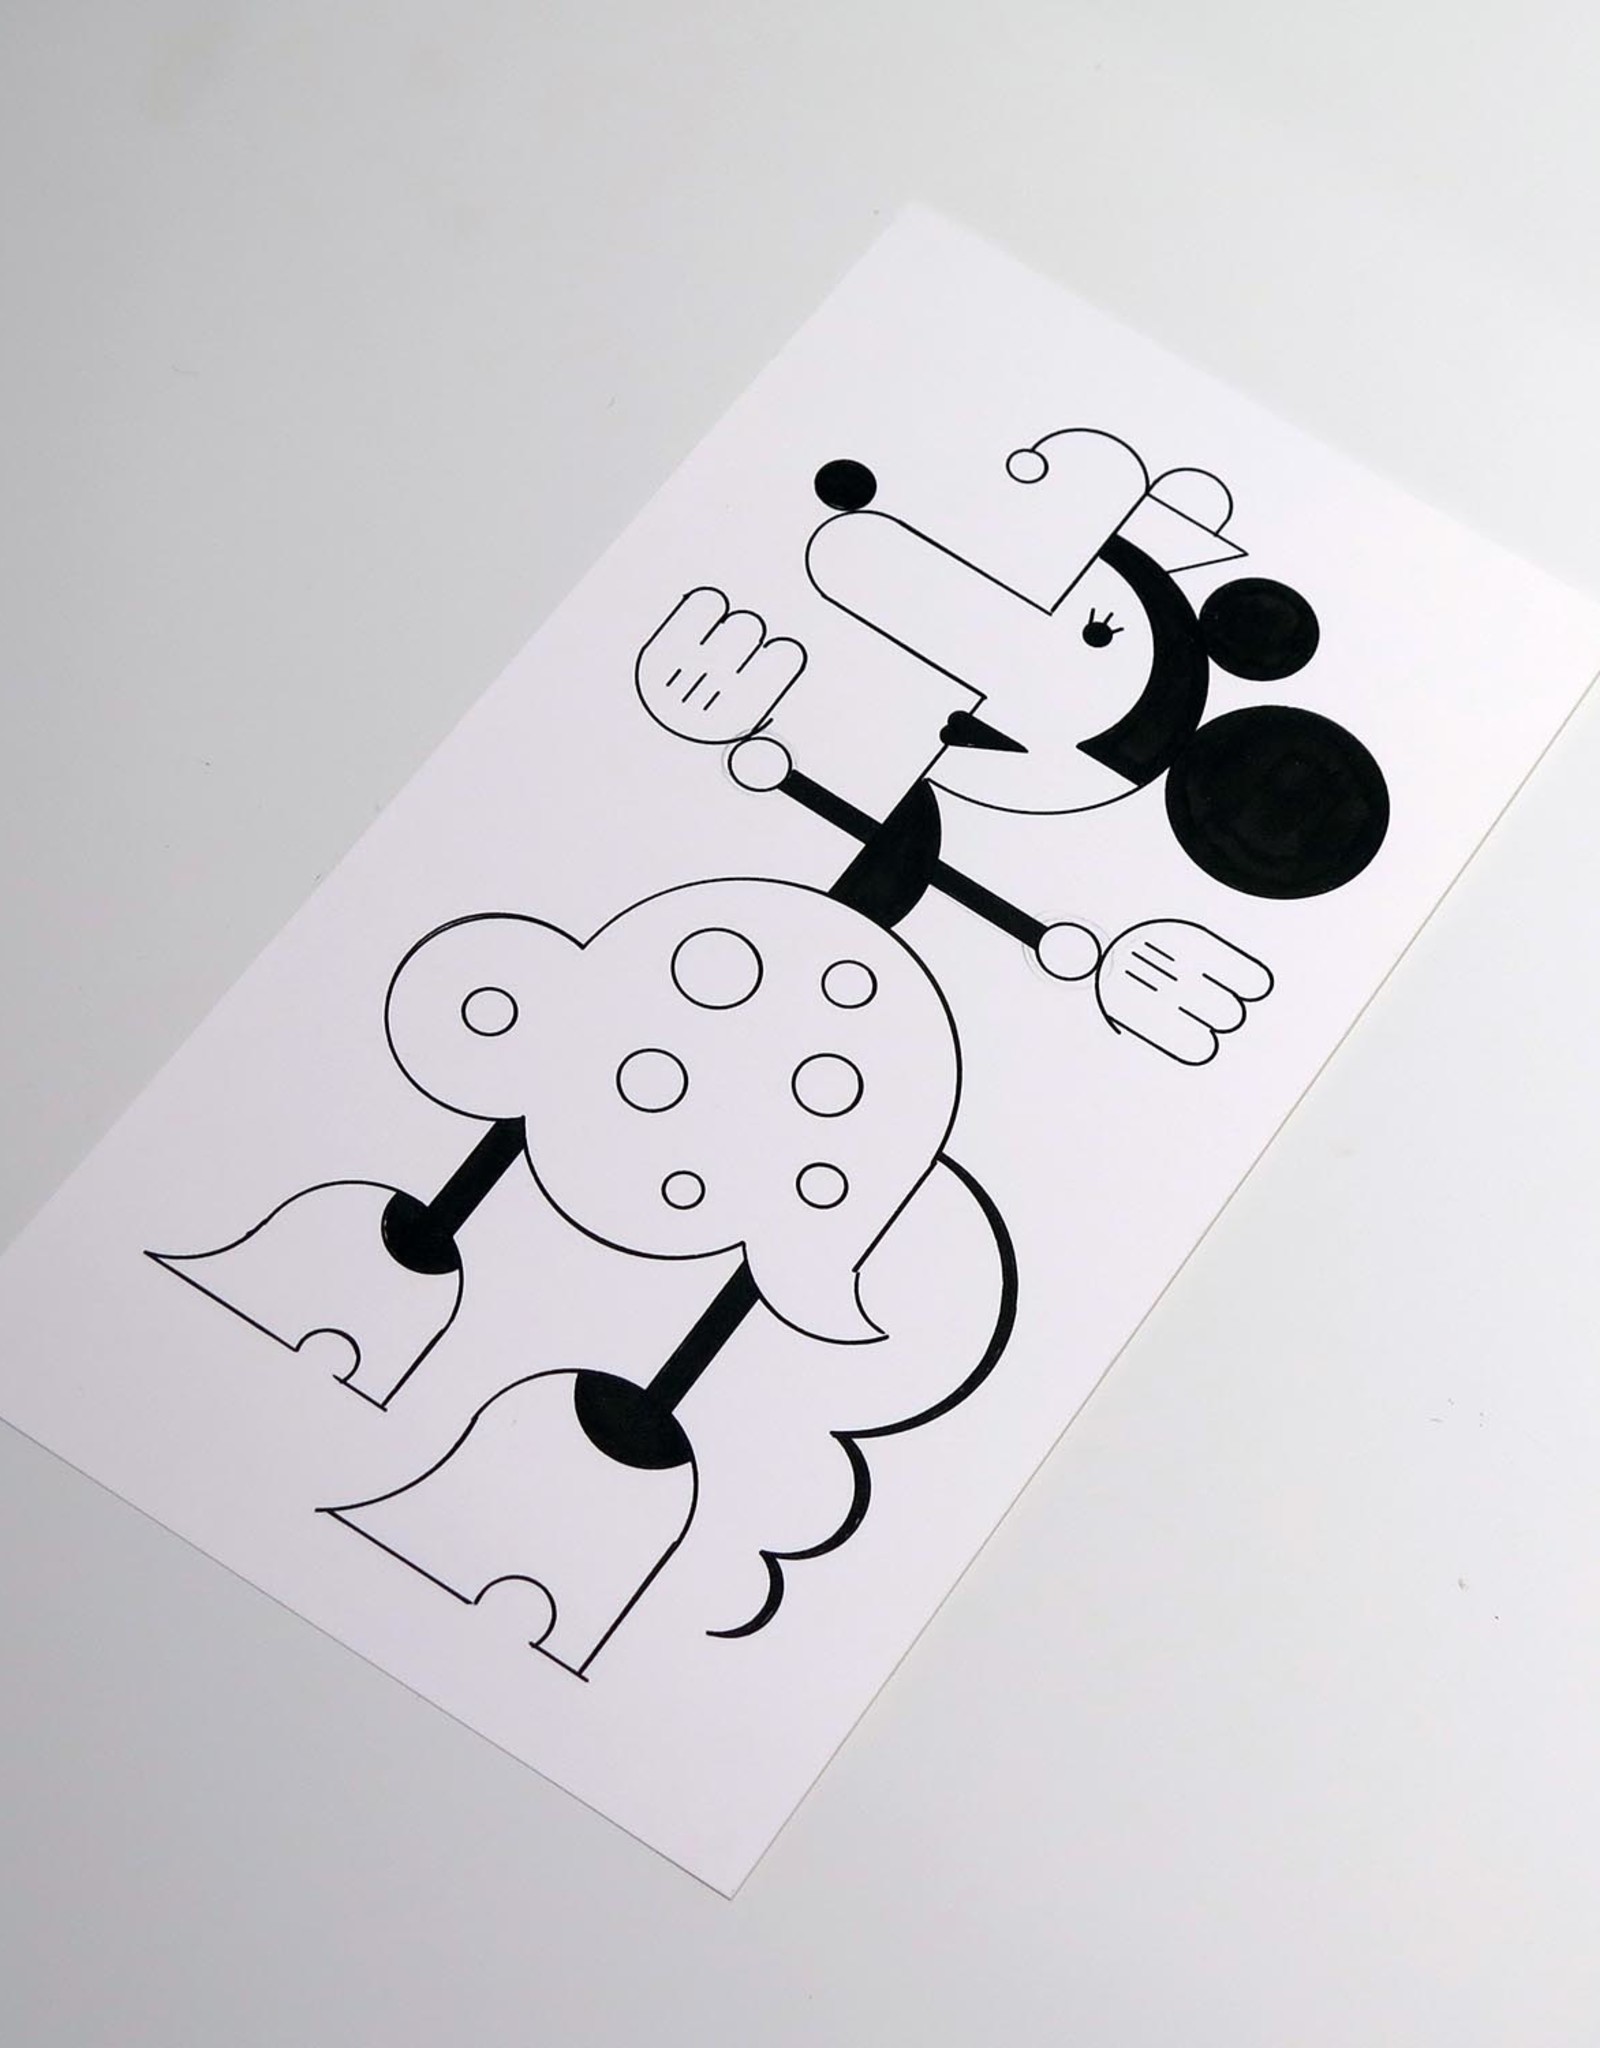 Ivan Brunetti "Mouse #2" Illustration by Ivan Brunetti